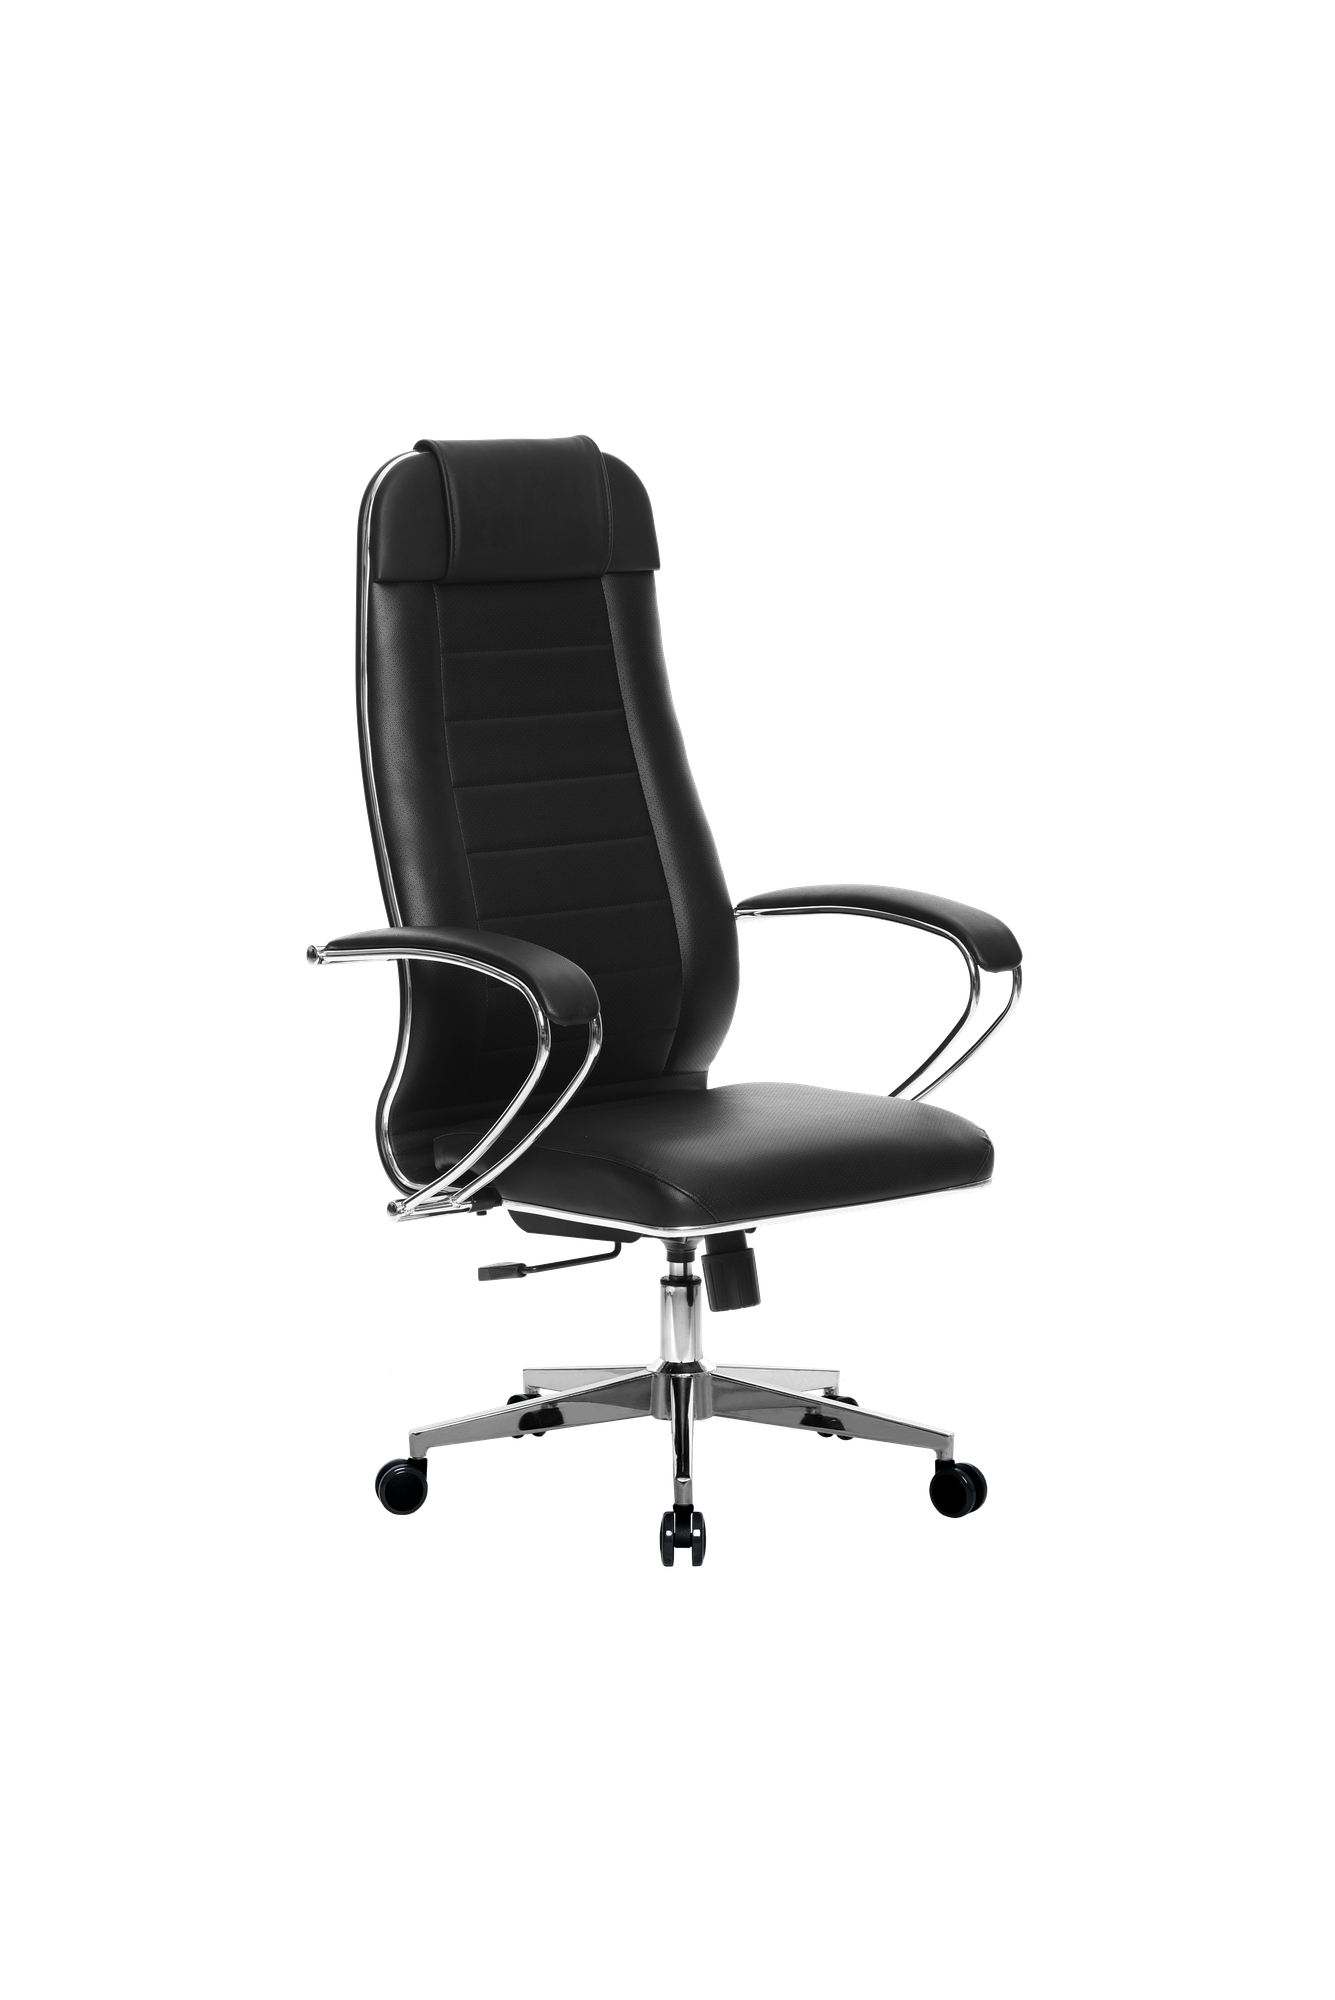 Кресло офисное Metta К-29 хром, до 120кг, кресло Метта с механизмом качания, кресло компьютерное, кресло офисное, кресло самурай, кресло для дома и офиса (Черный)